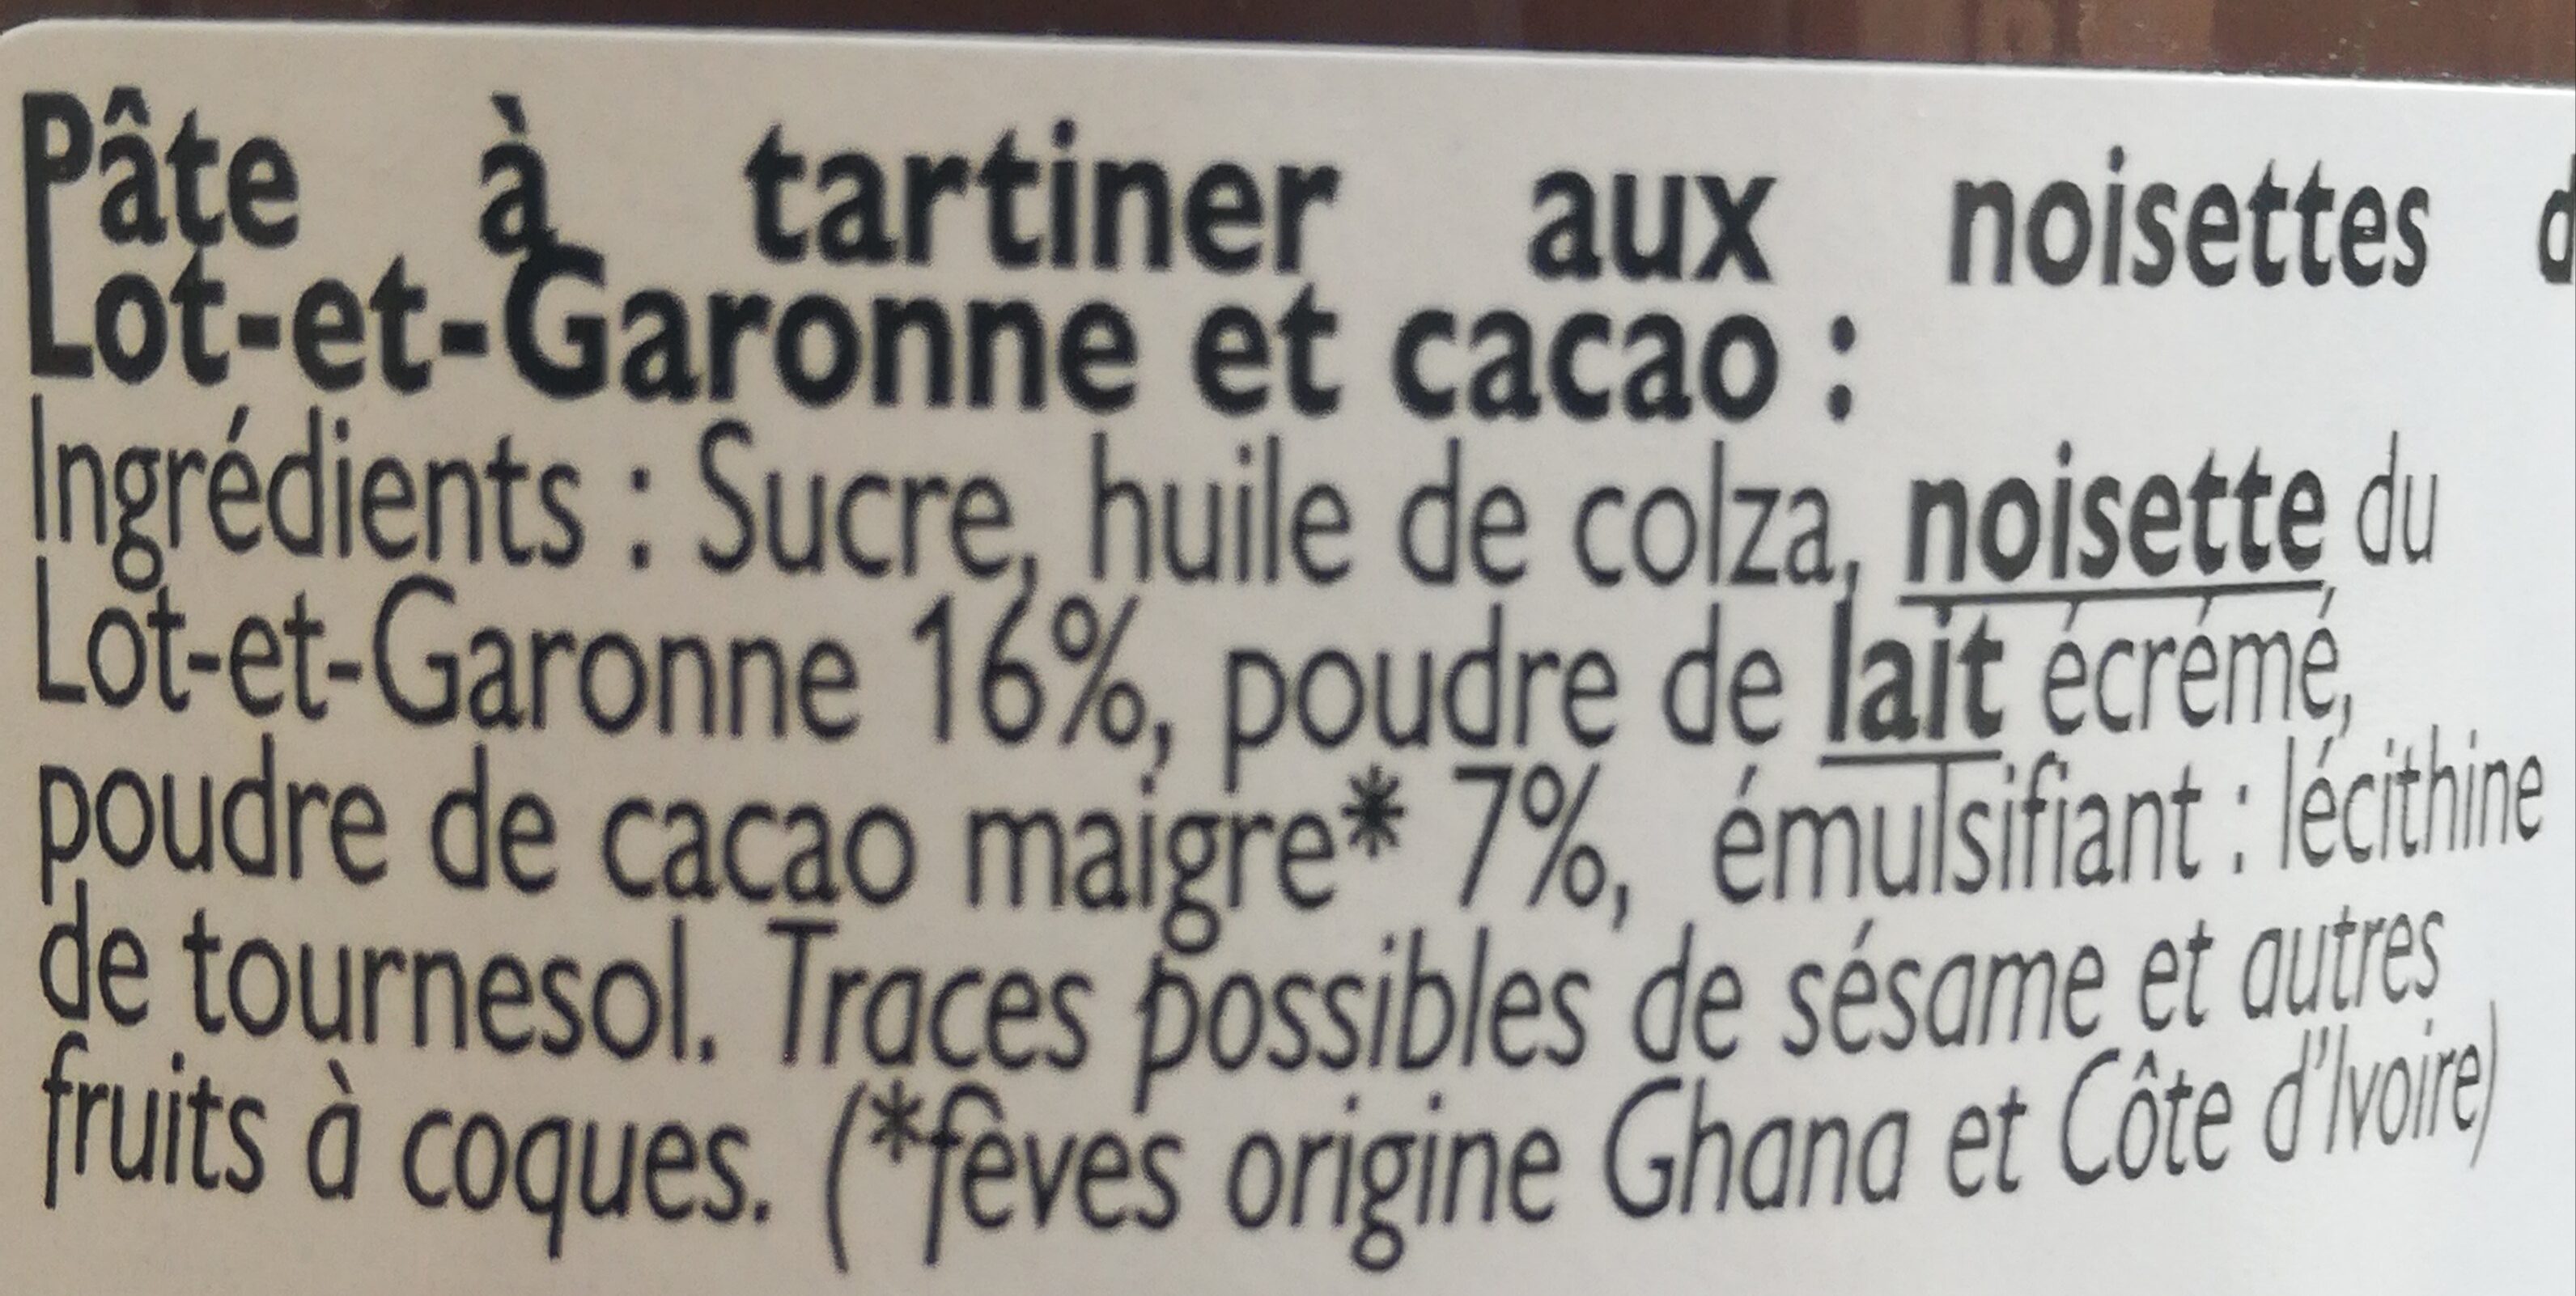 Pâte à tartiner aux noisettes du Lot-et-Garonne et cacao - 280g